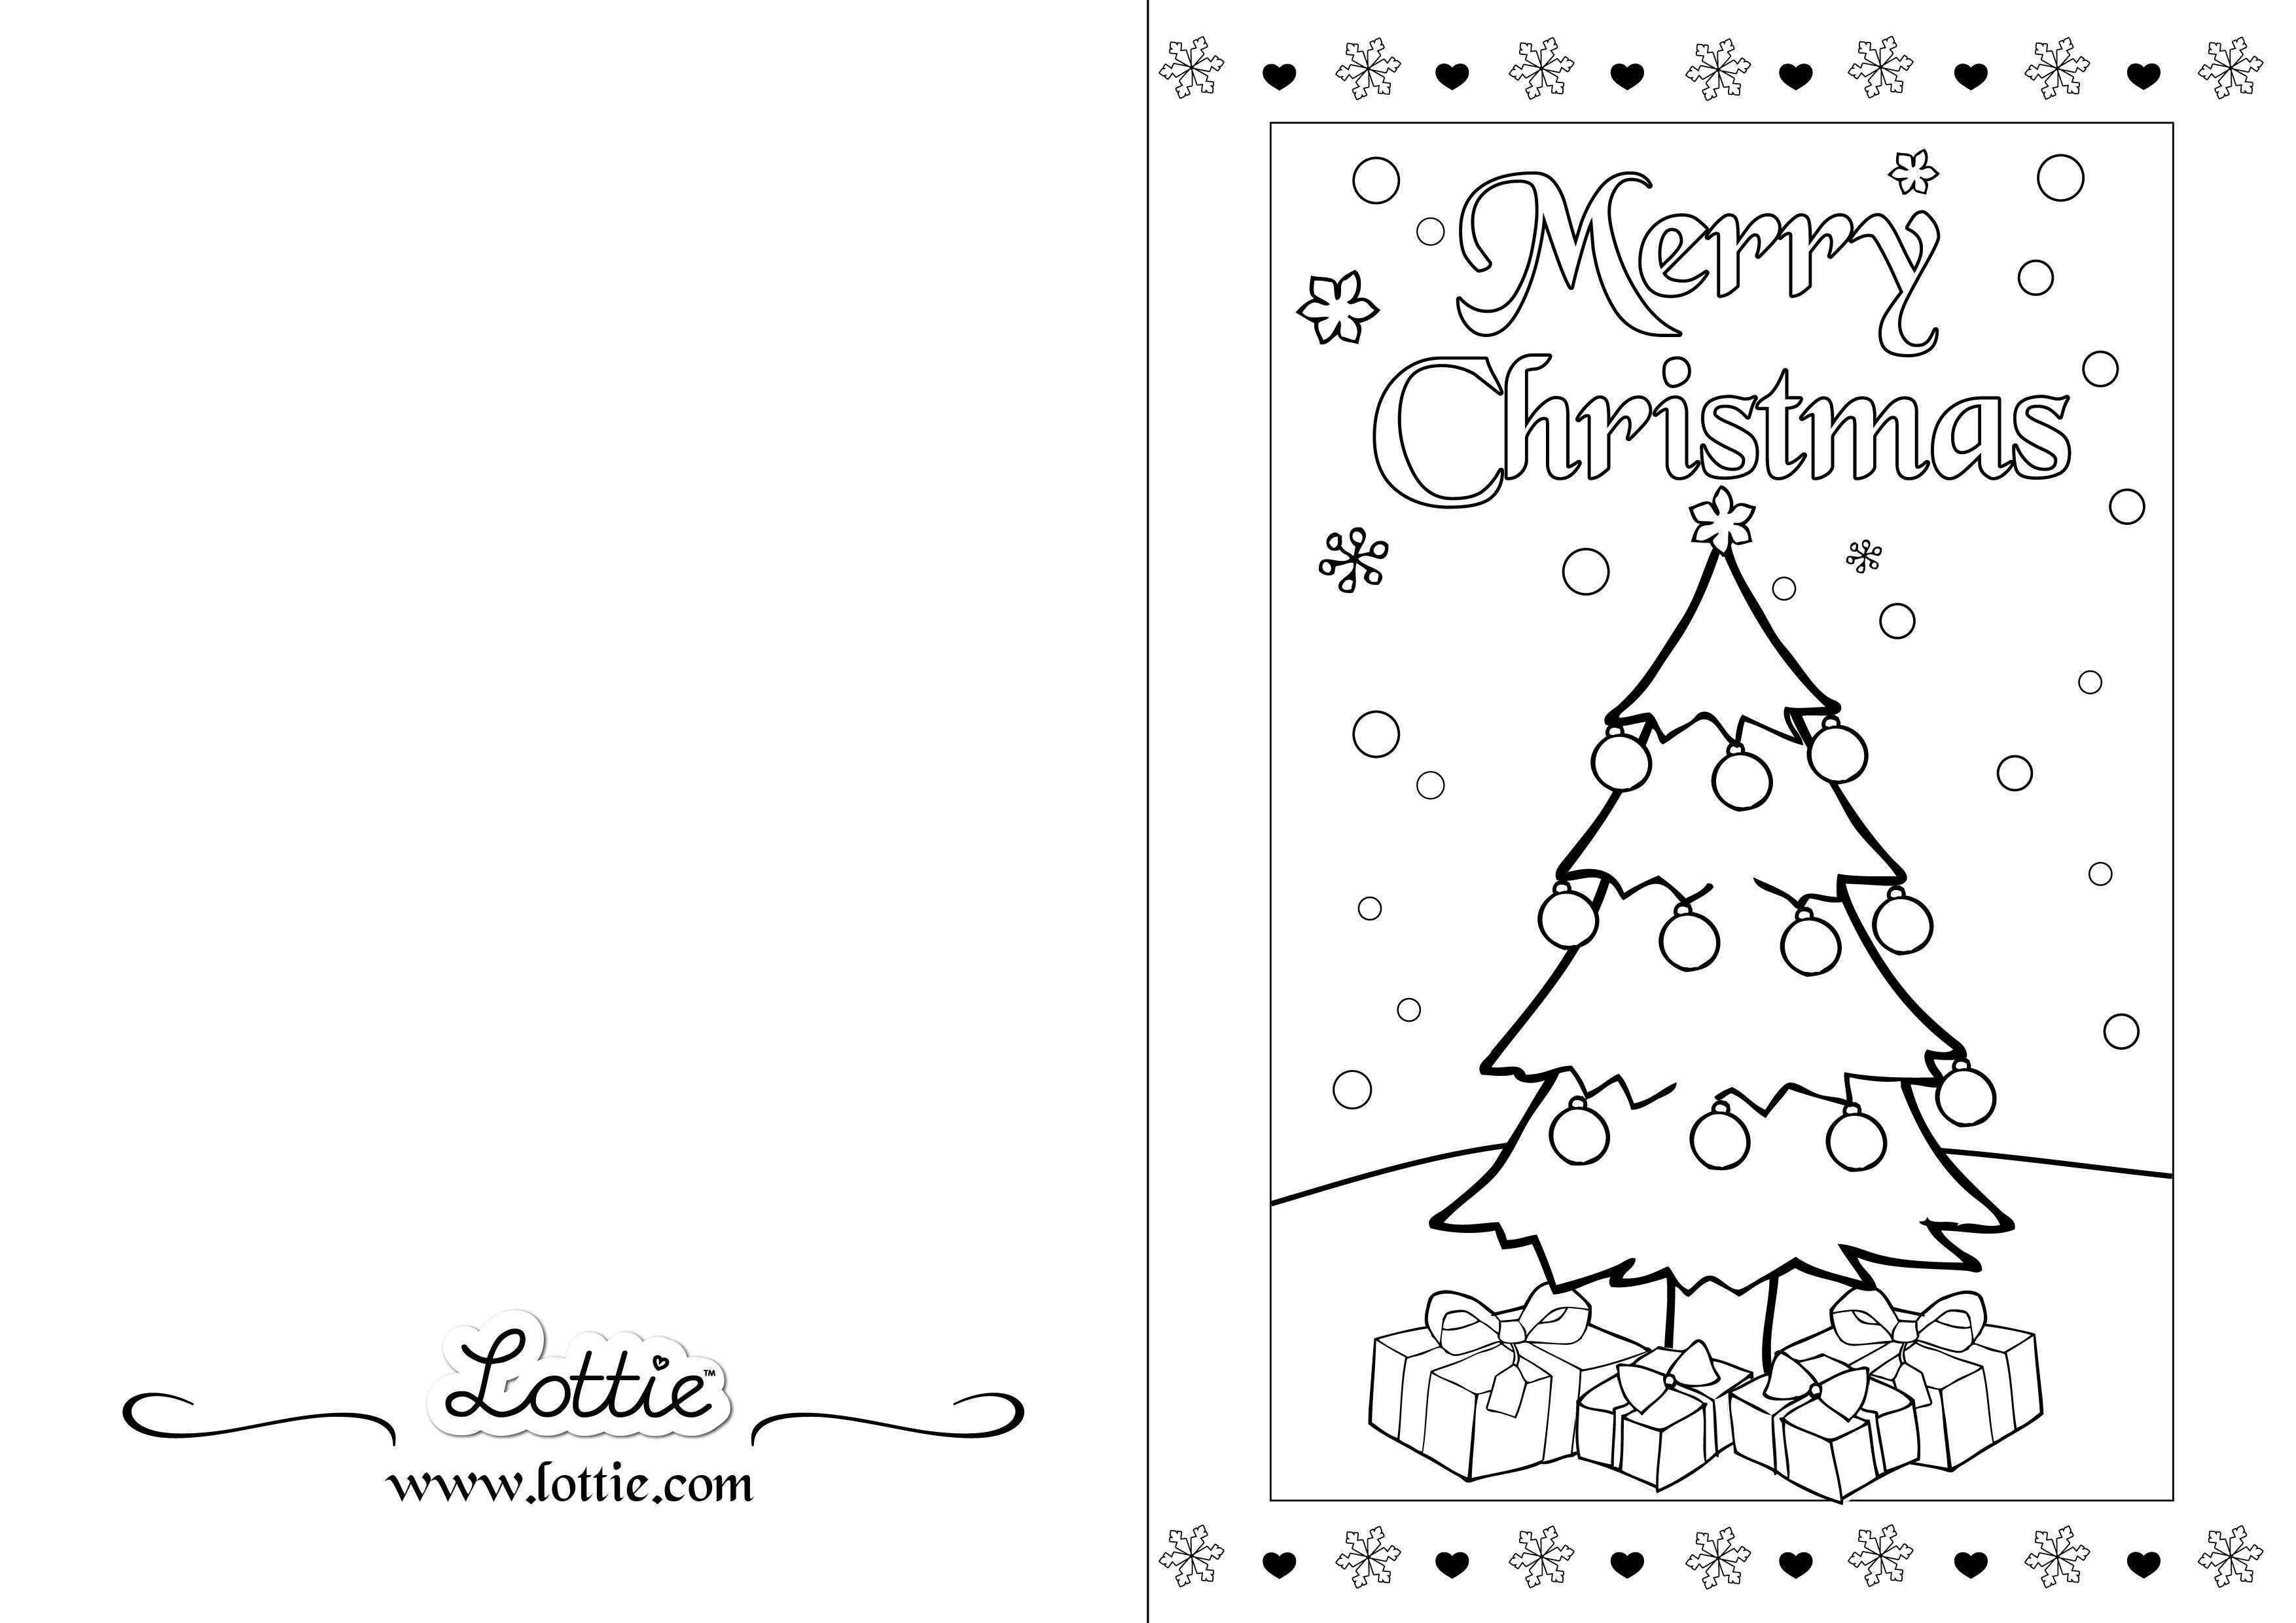 94 Standard Christmas Card Templates Printable Black And White Download with Christmas Card Templates Printable Black And White